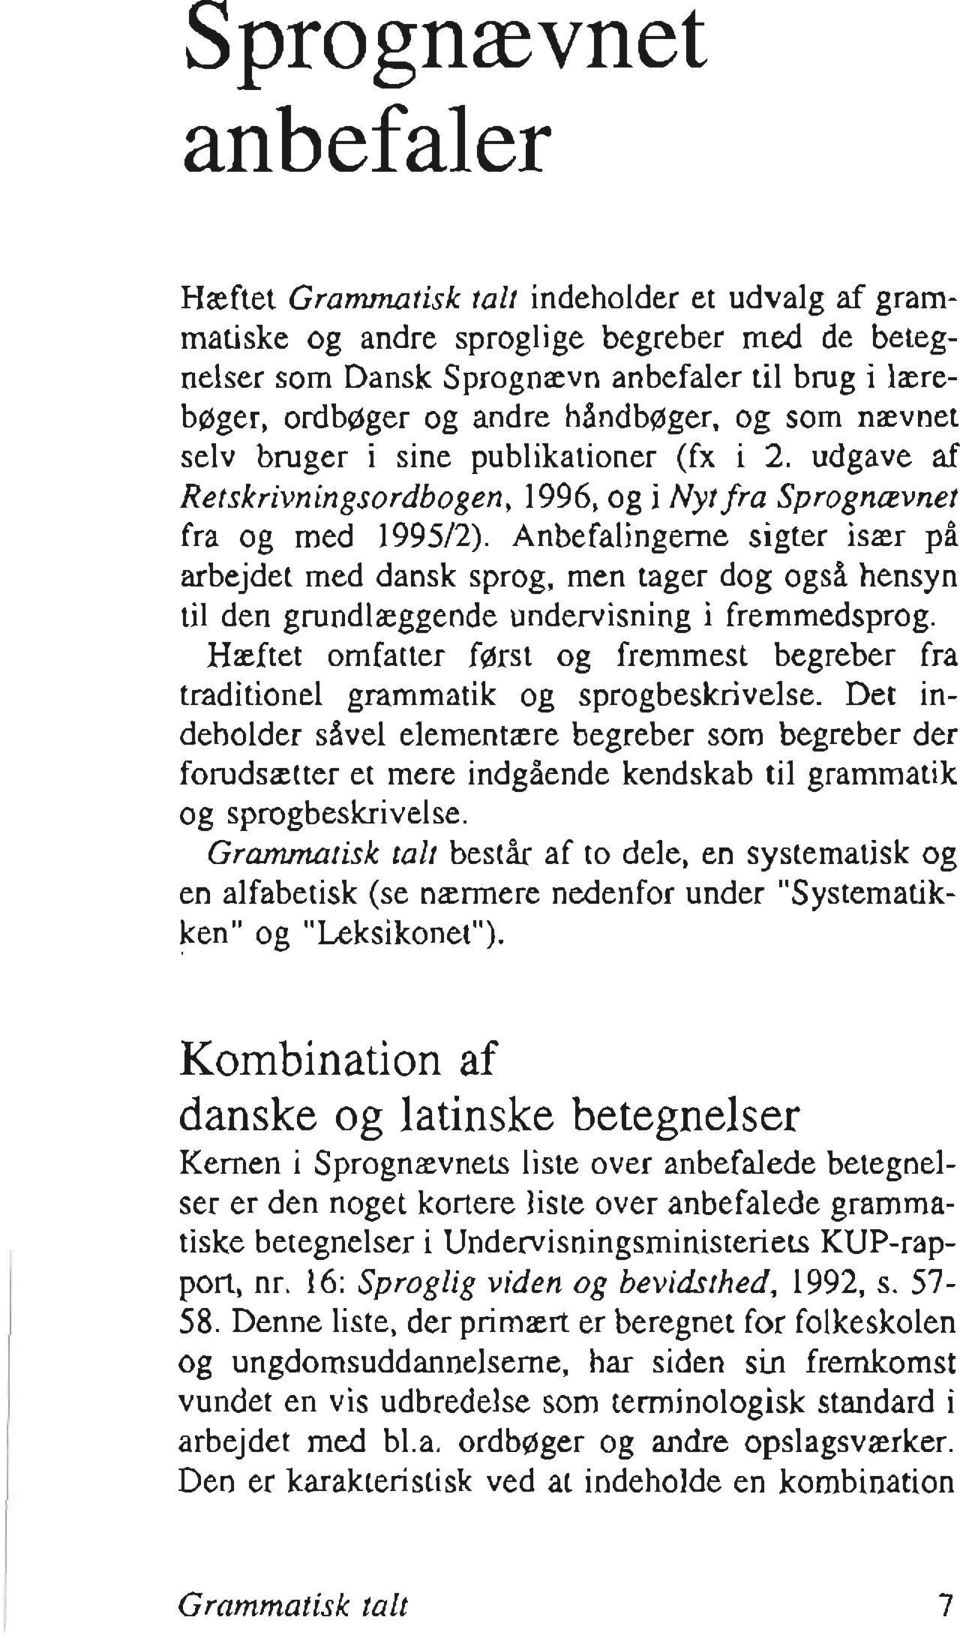 Anbefalingerne sigter især på arbejdet med dansk sprog, men tager dog også hensyn til den grundlæggende undervisning i fremmedsprog.